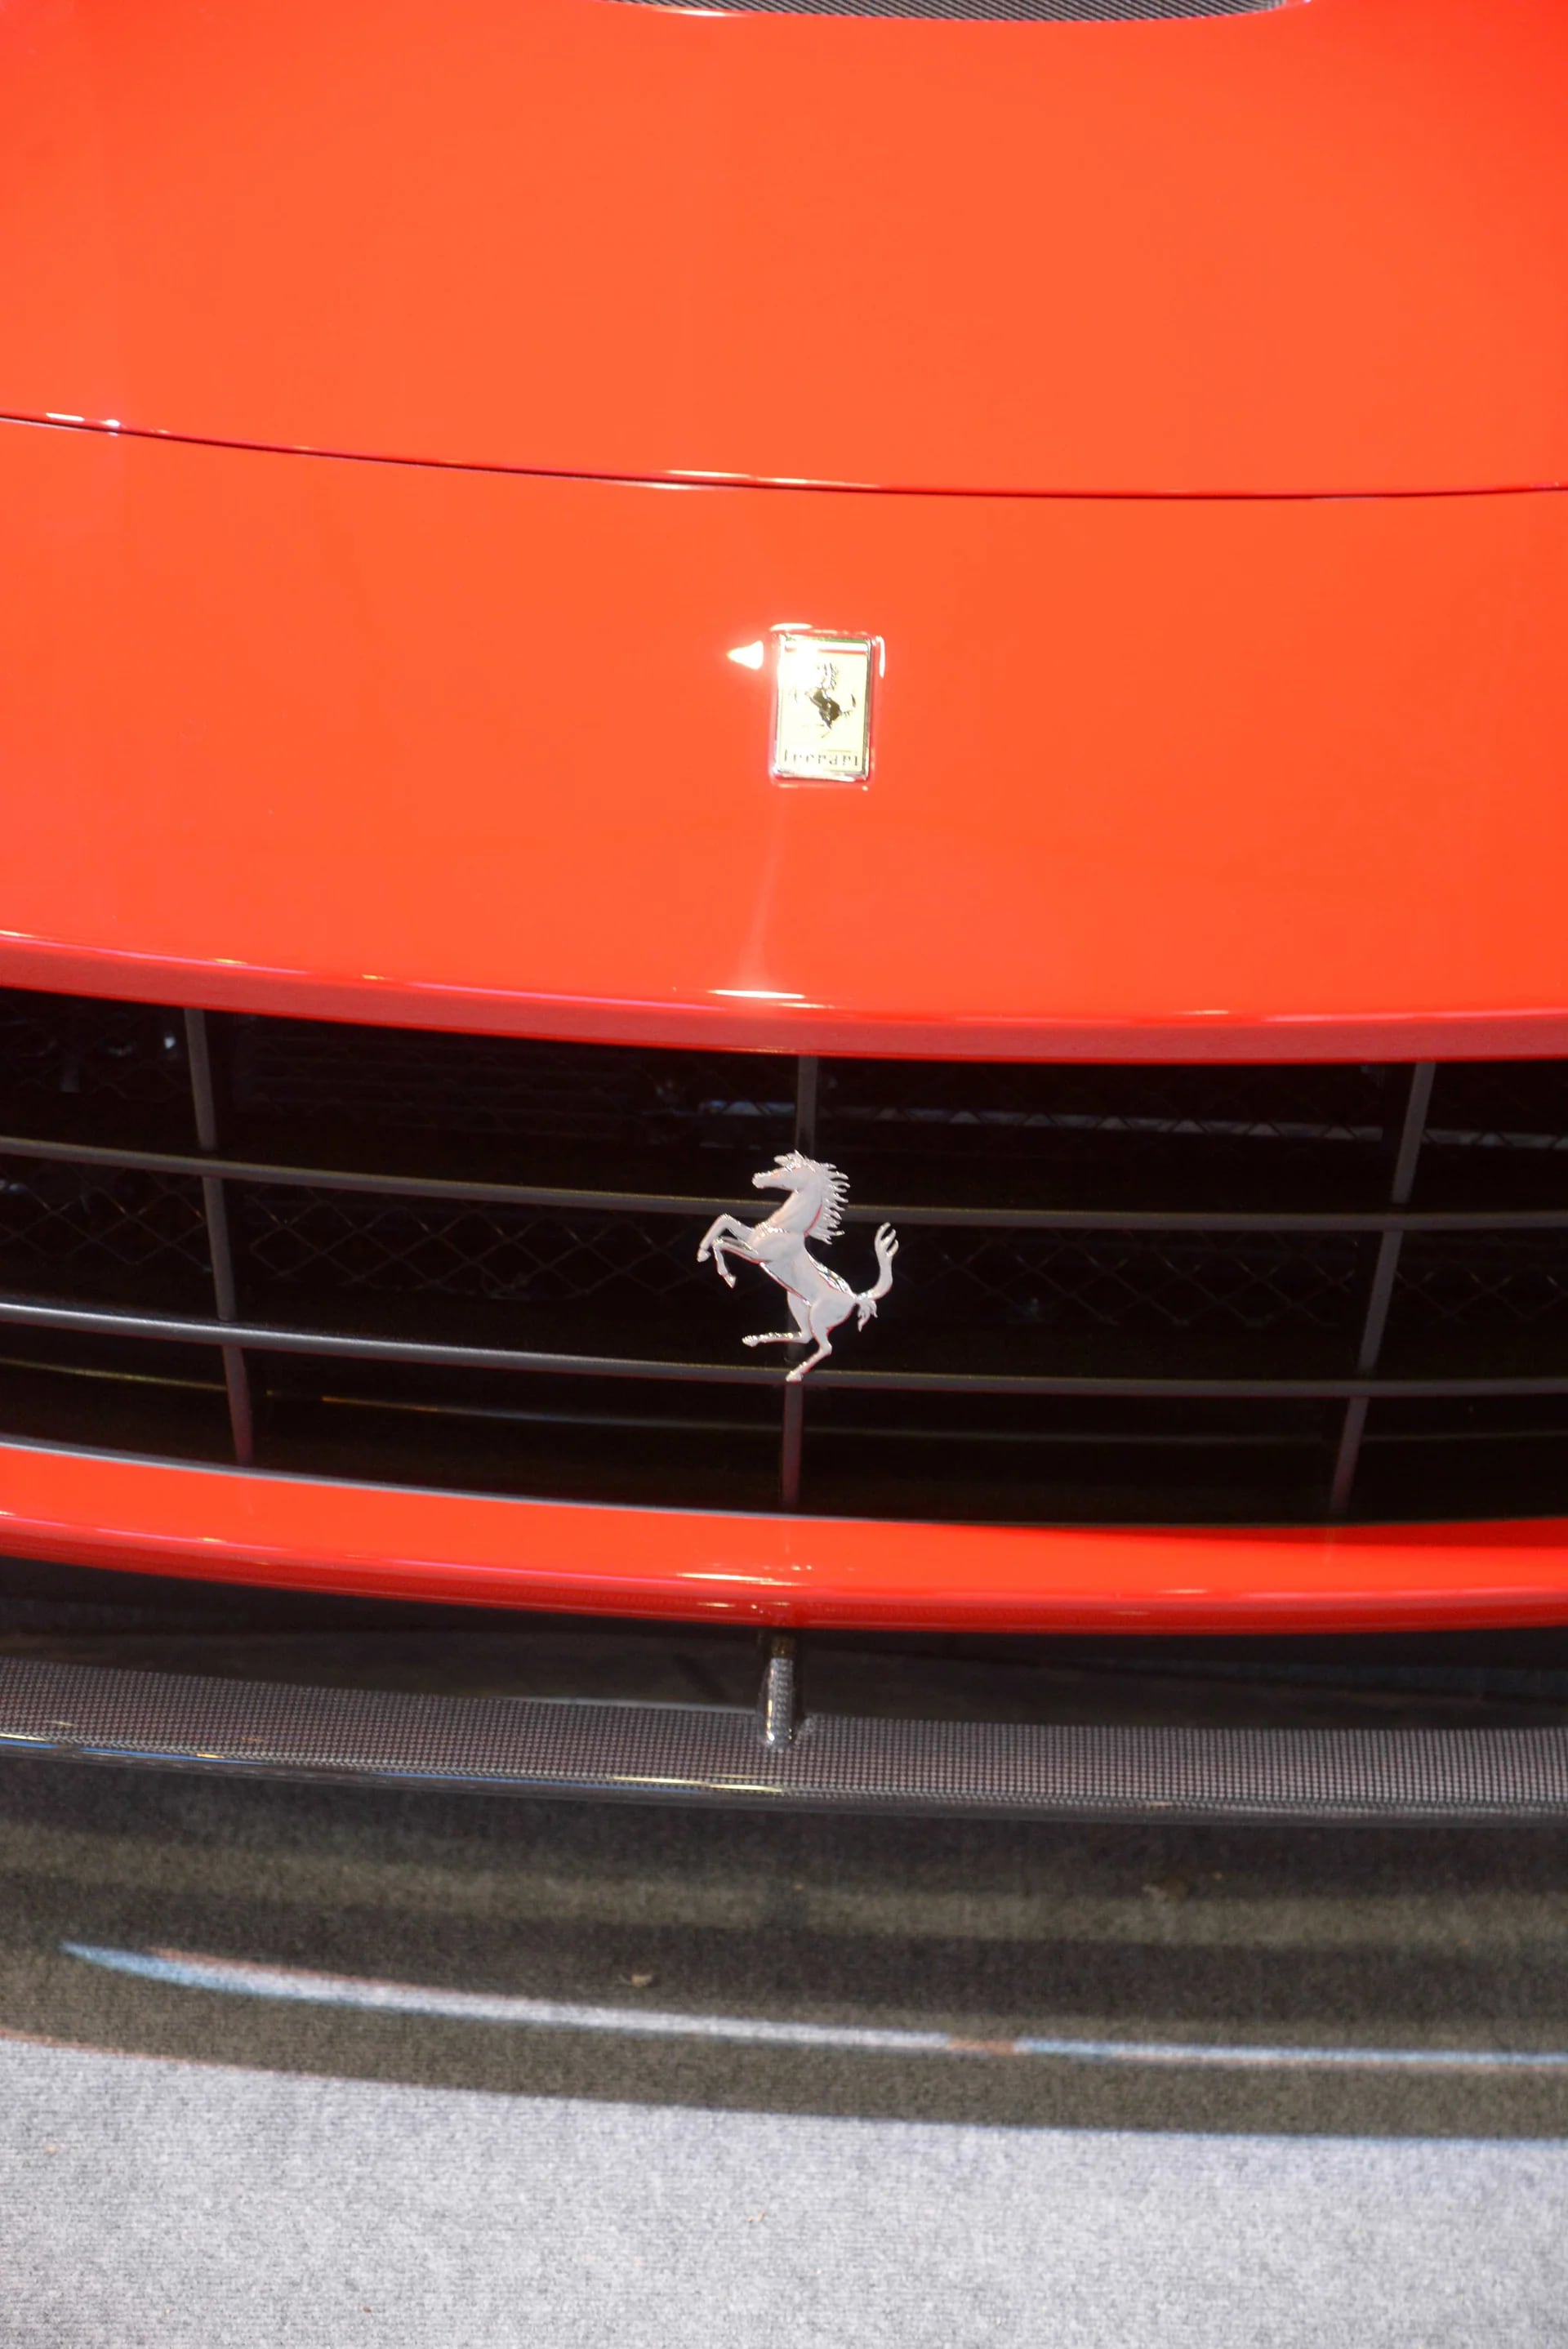 El Cavallino Rampante, emblema de Ferrari e ícono de la deportividad de la industria automotriz (Enrique Abatte)